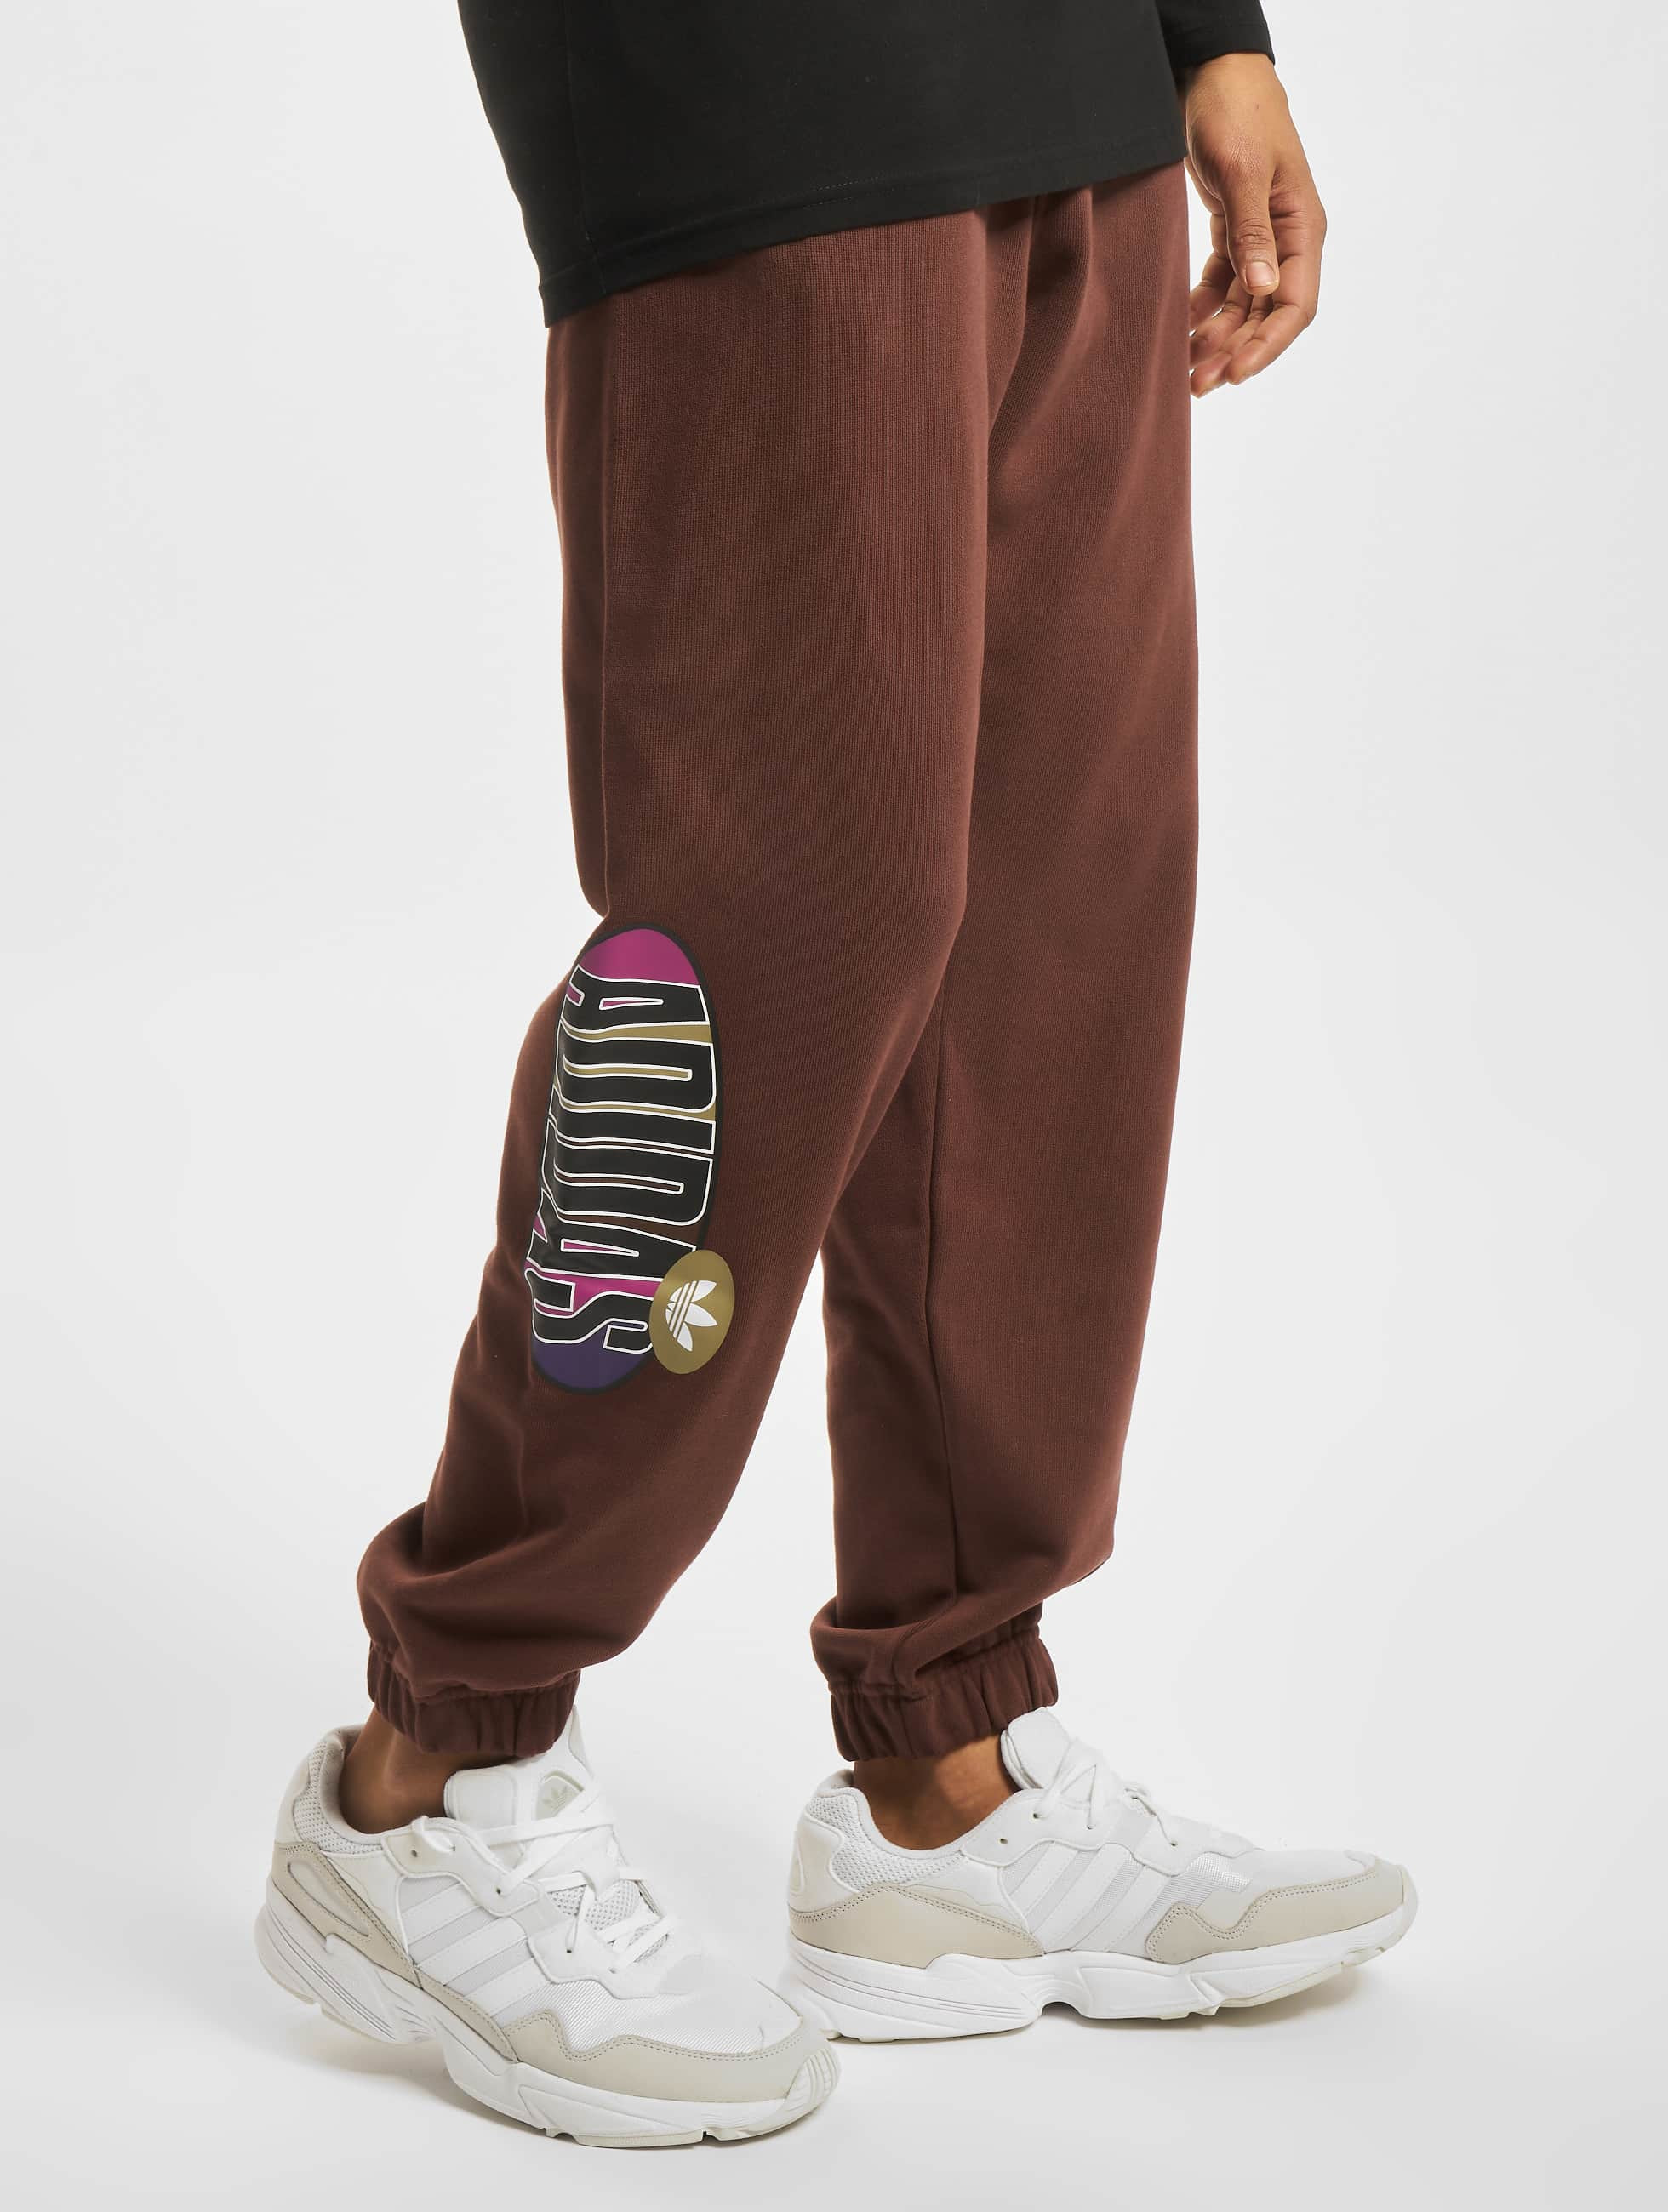 Structureel Normaal gesproken Hen adidas Originals broek / joggingbroek TRF A33 in bruin 855338